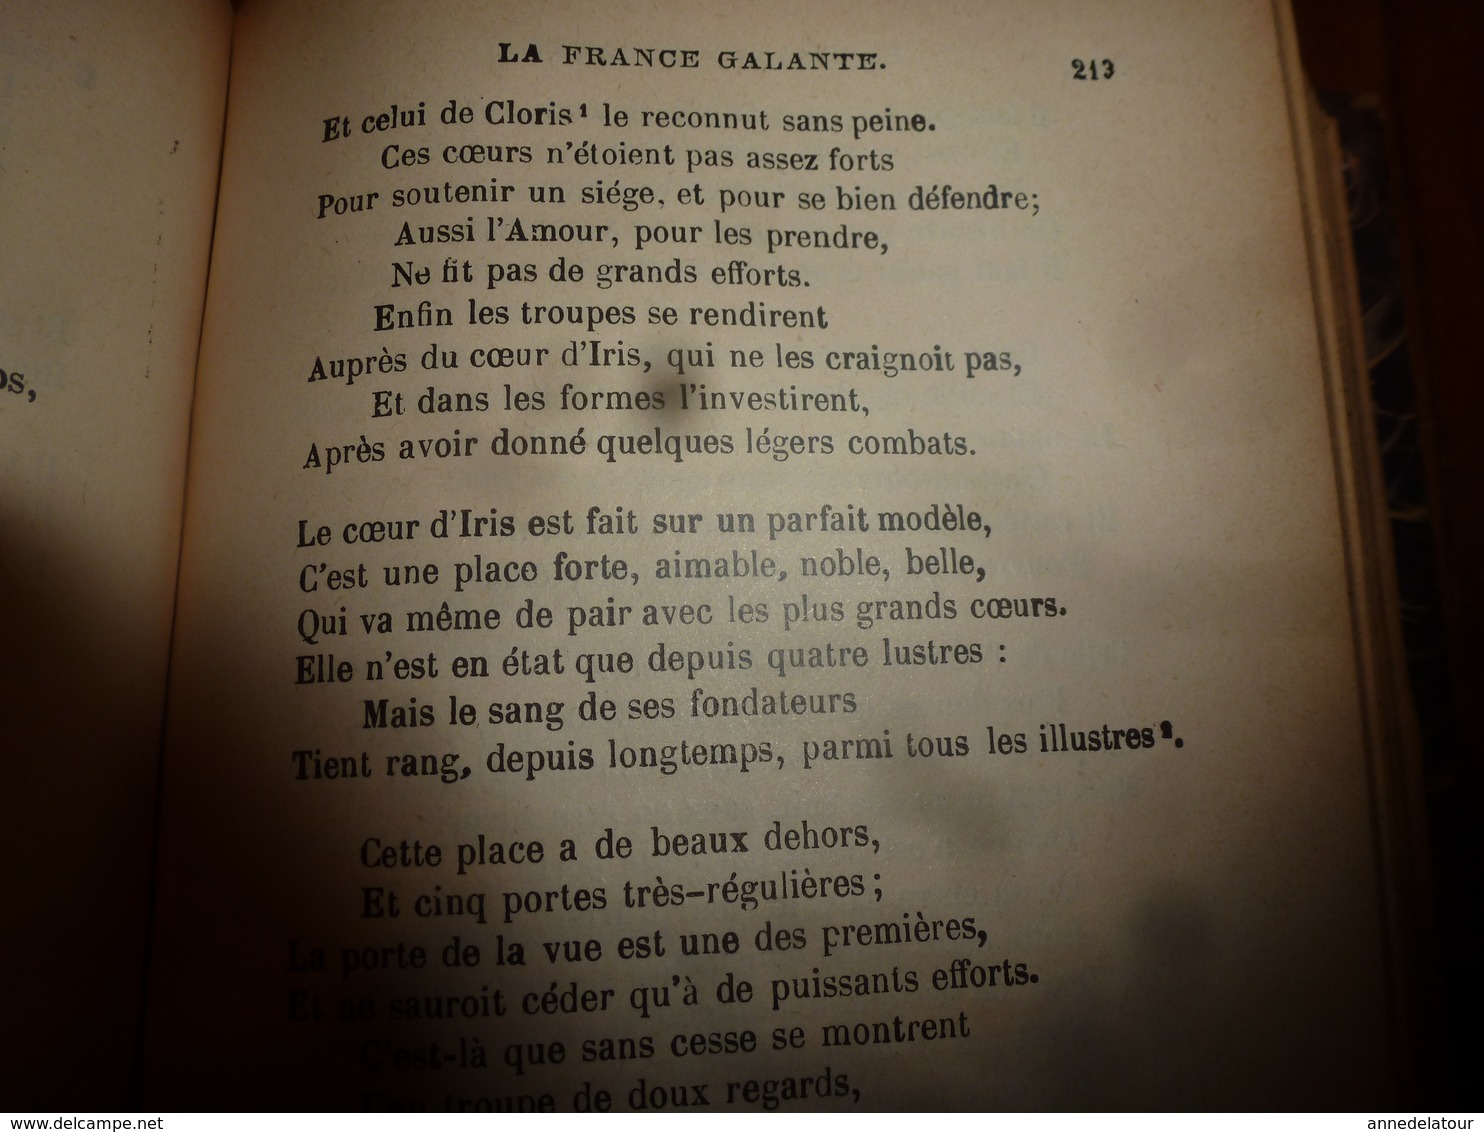 1840 HISTOIRE AMOUREUSE DES GAULES  tome 2   Par Bussy-Rabutin     Suivi de la France galante du XVIIe siècle